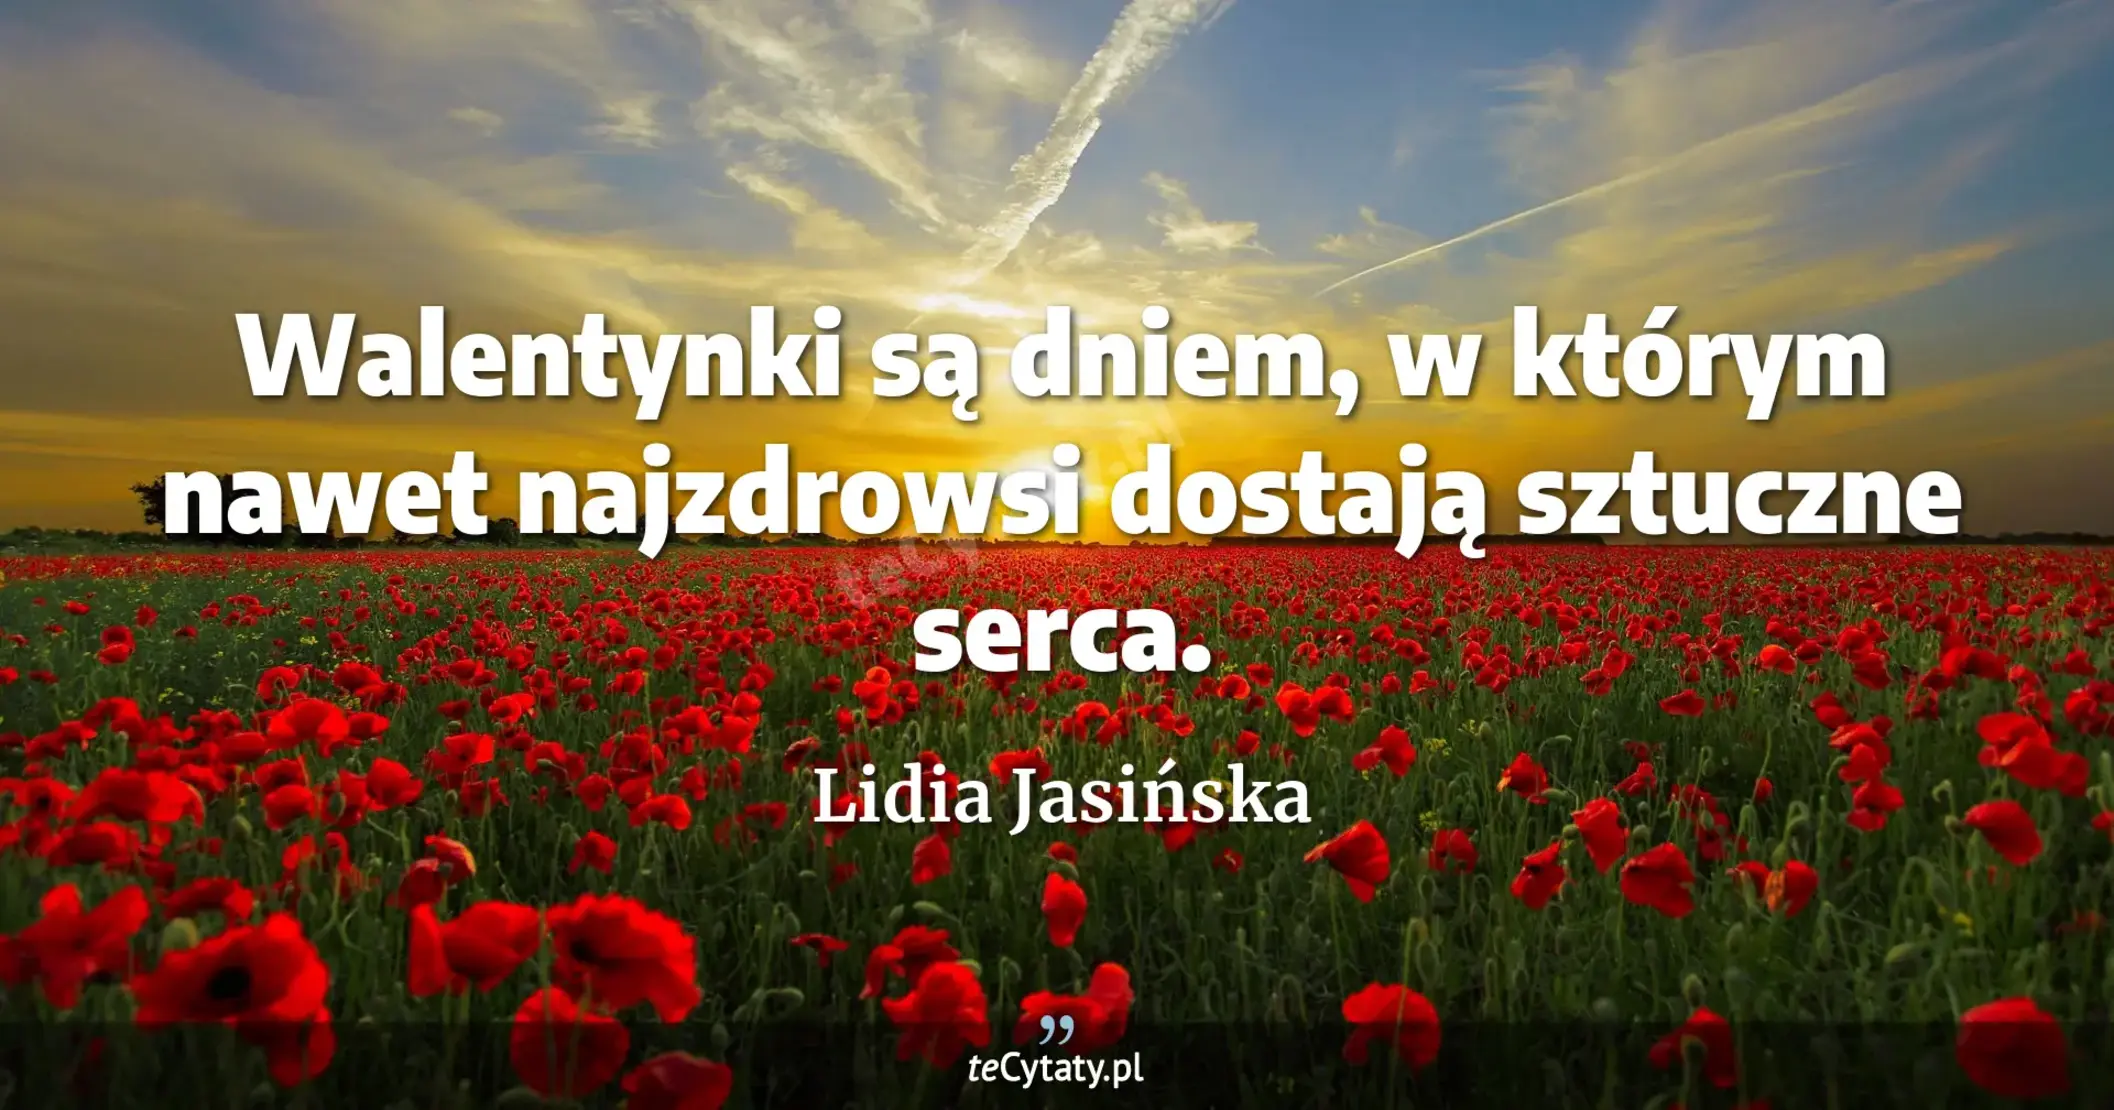 Walentynki są dniem, w którym nawet najzdrowsi dostają sztuczne serca. - Lidia Jasińska